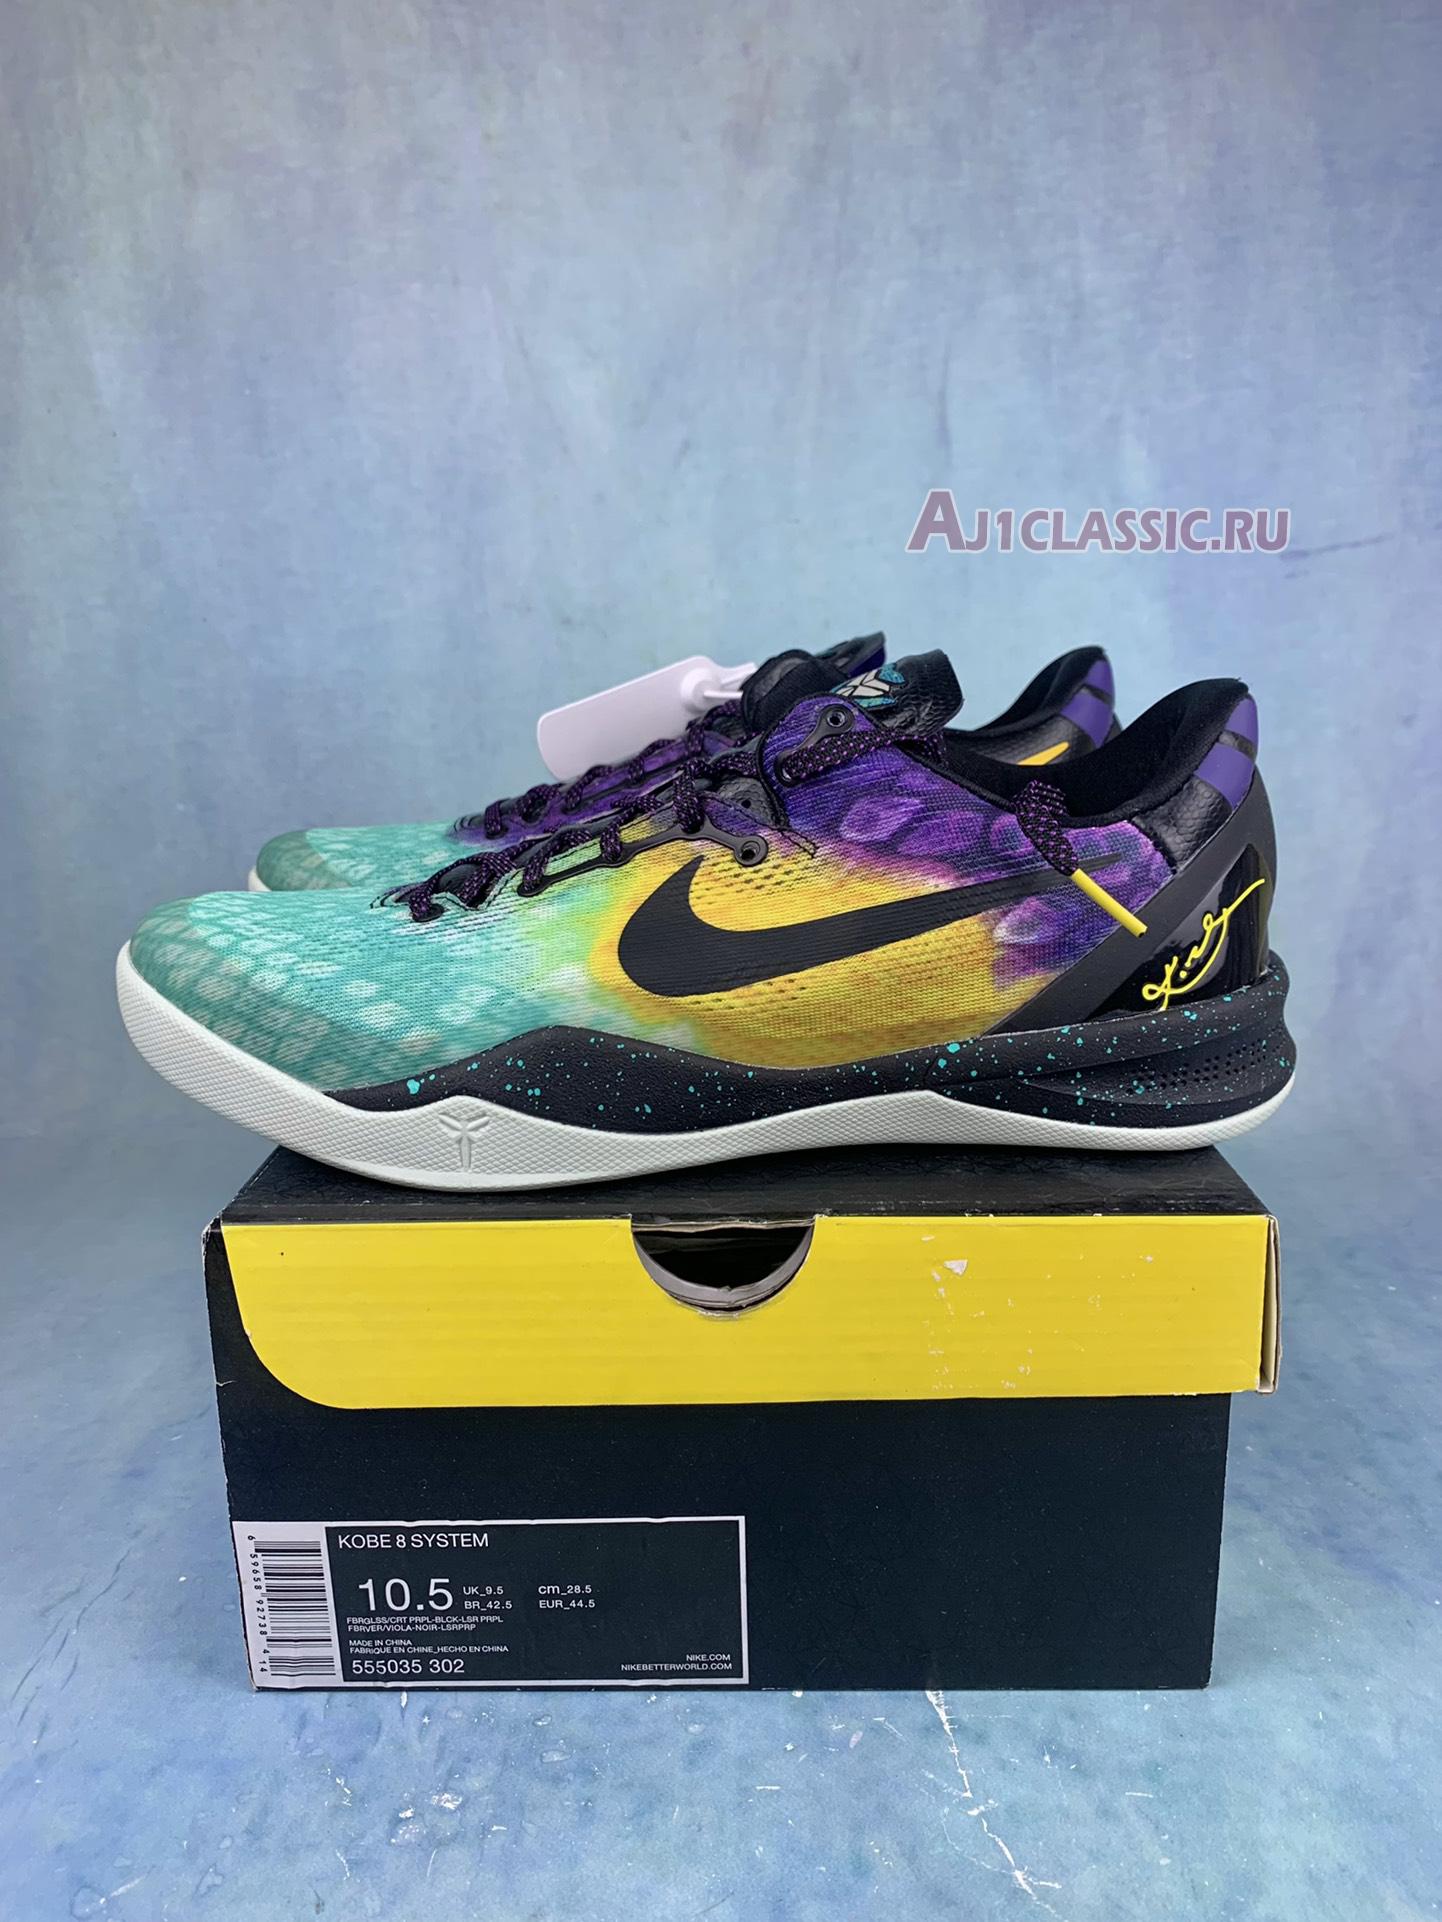 Nike Kobe 8 System "Easter" 555035-302